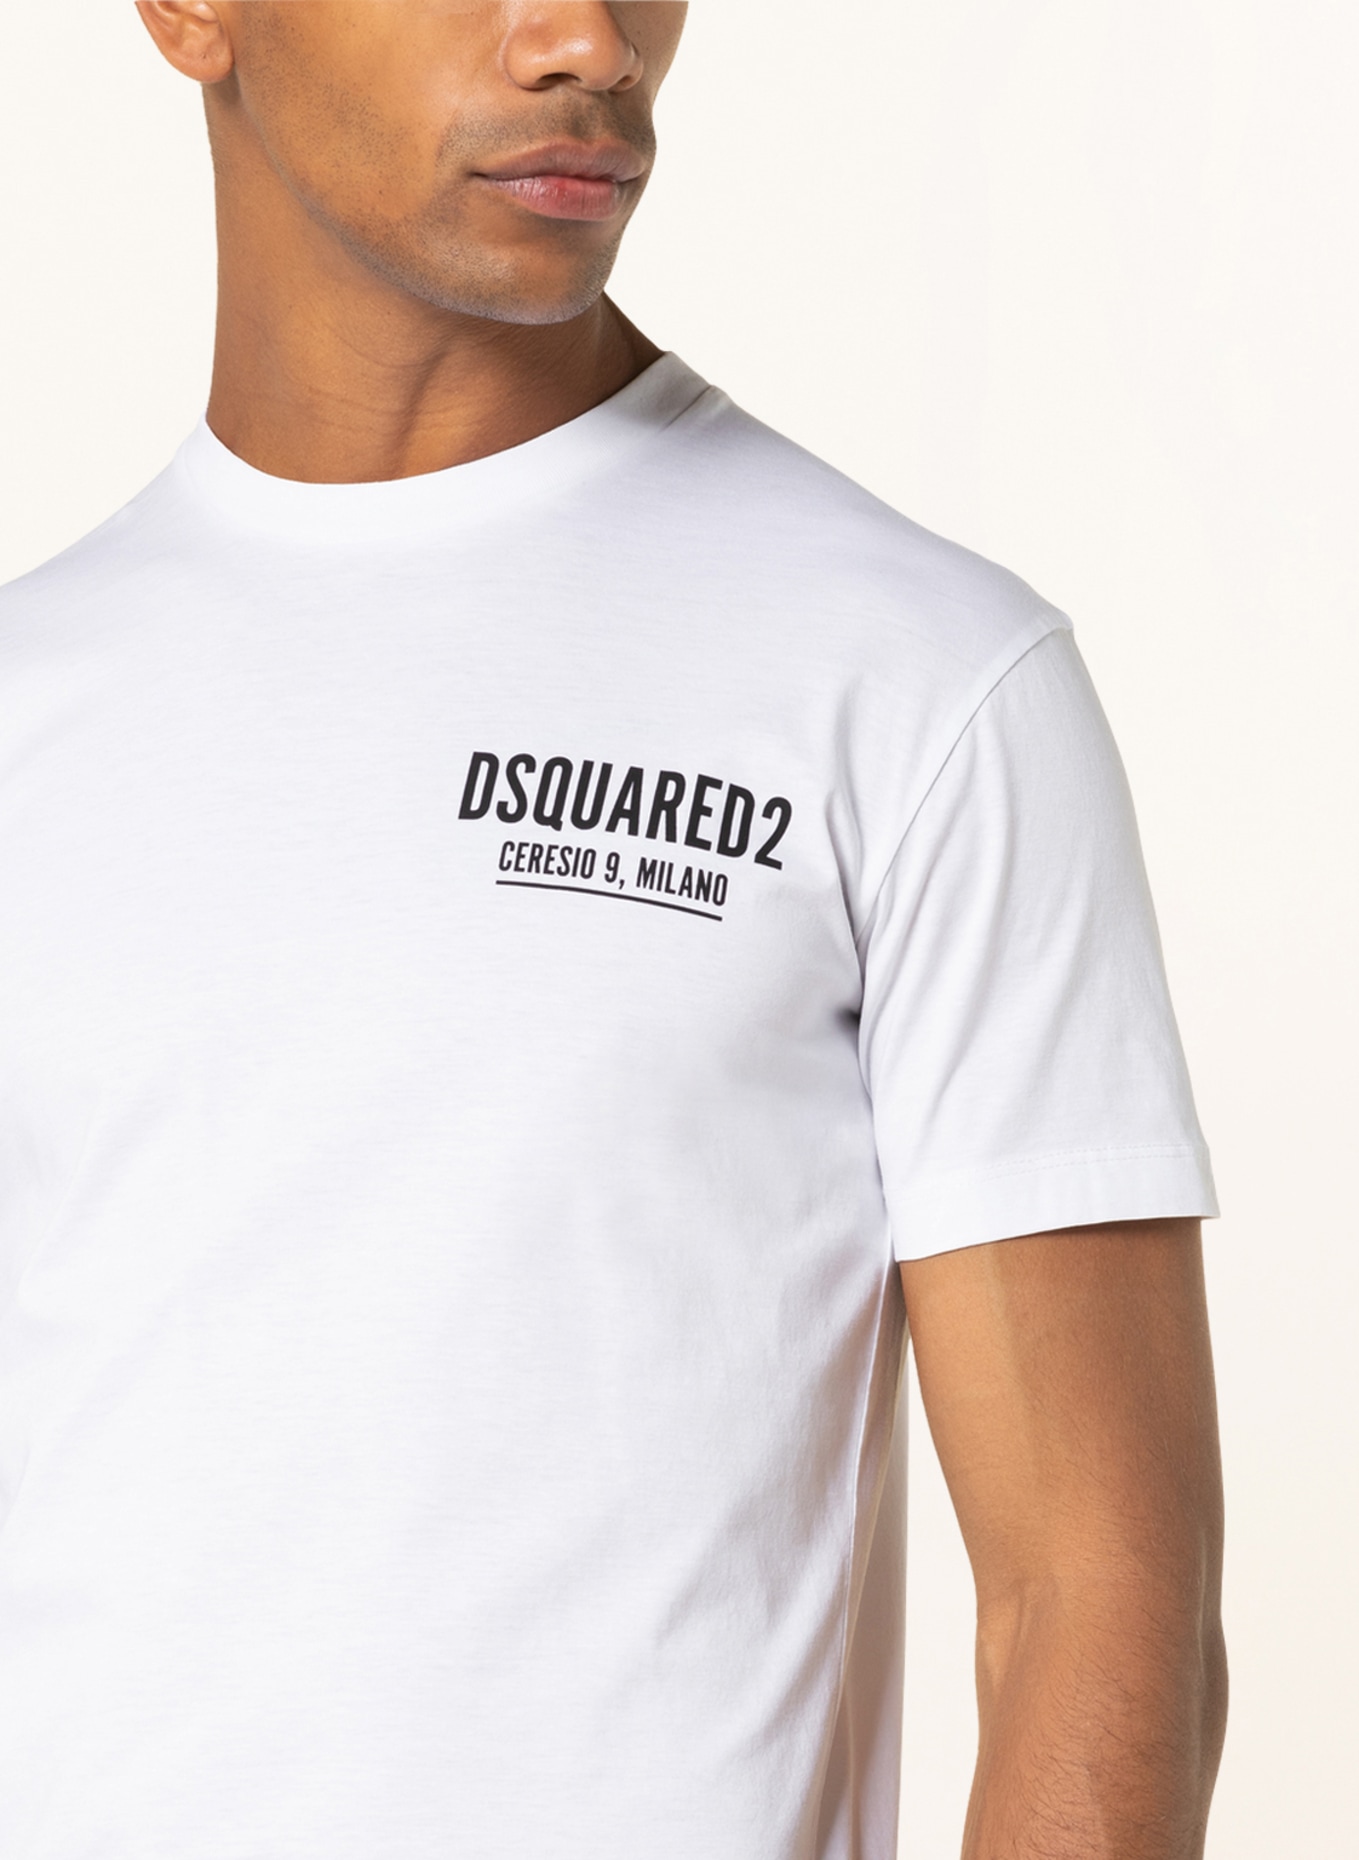 DSQUARED2 T-Shirt CERESIO 9 , Farbe: WEISS/ SCHWARZ (Bild 4)